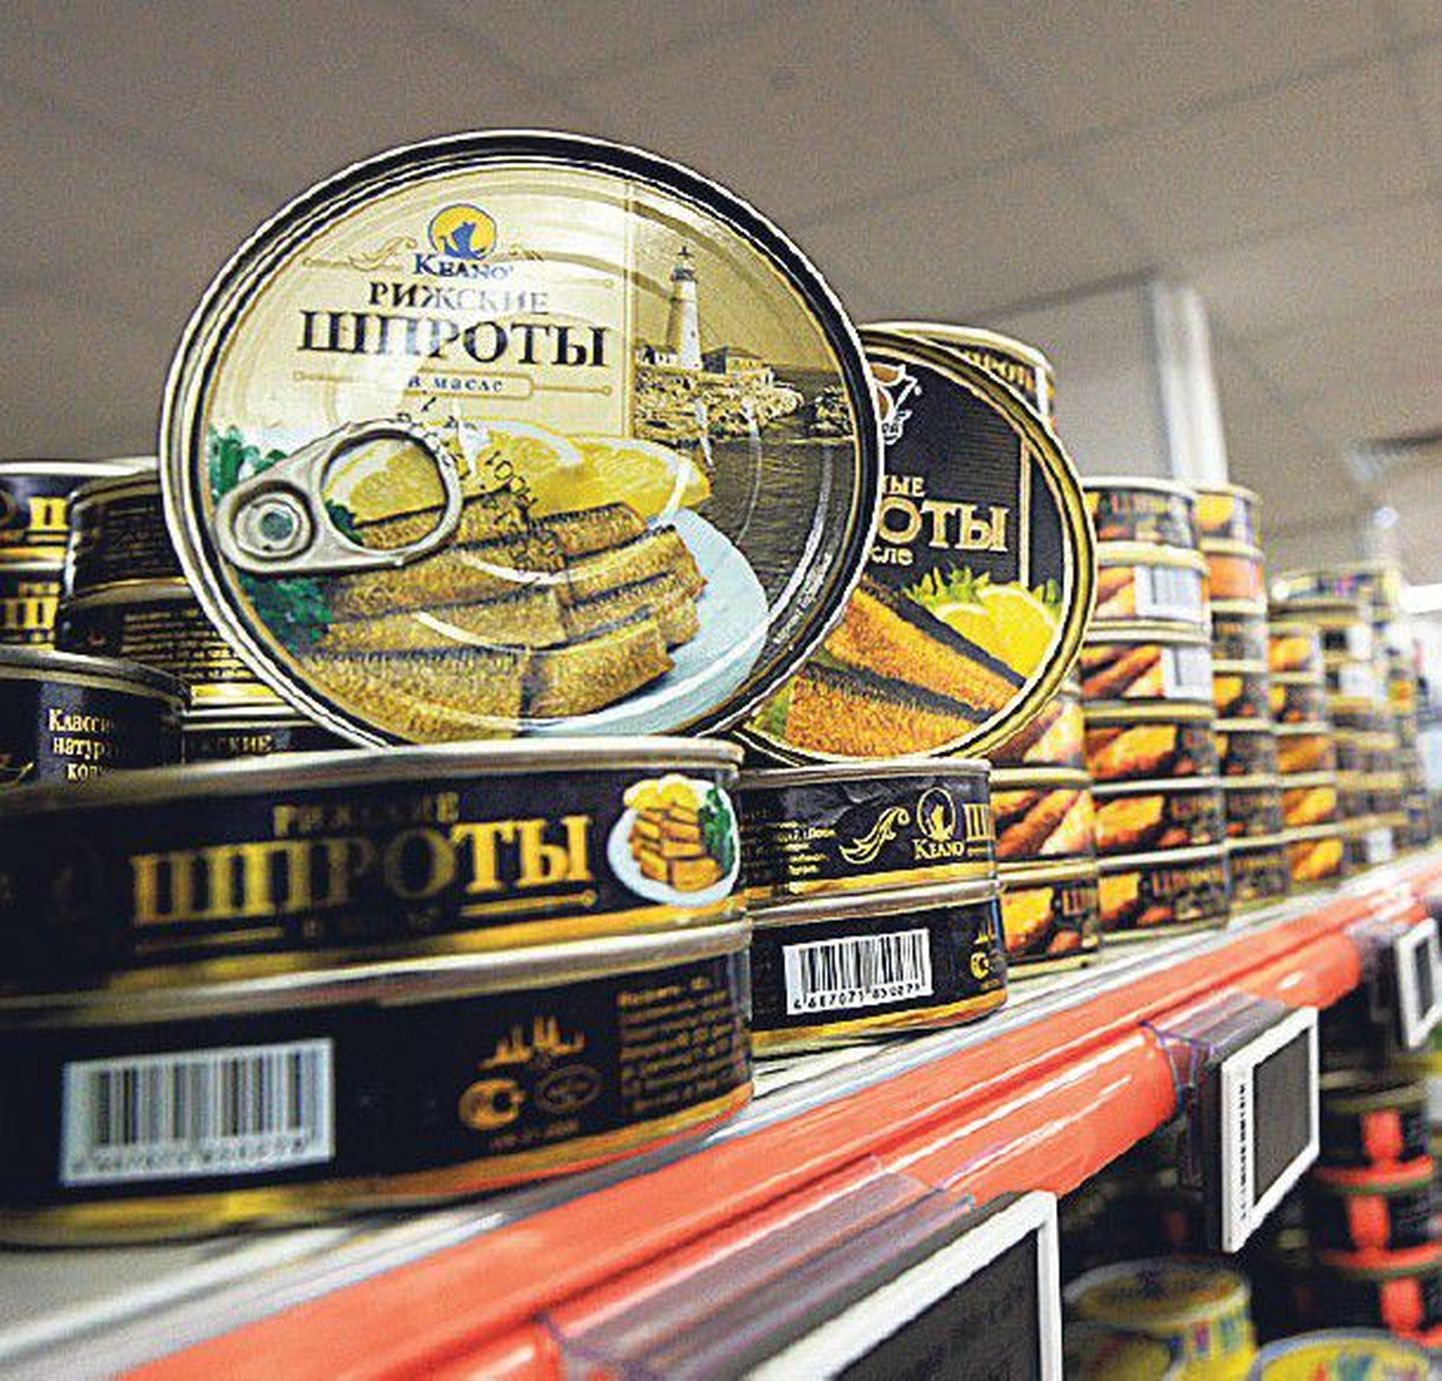 Шпроты из Латвии продавались в московских супермаркетах еще в прошлом году. Сегодня же экспорт латвийских рыбных консервов испытывает серьезный кризис.